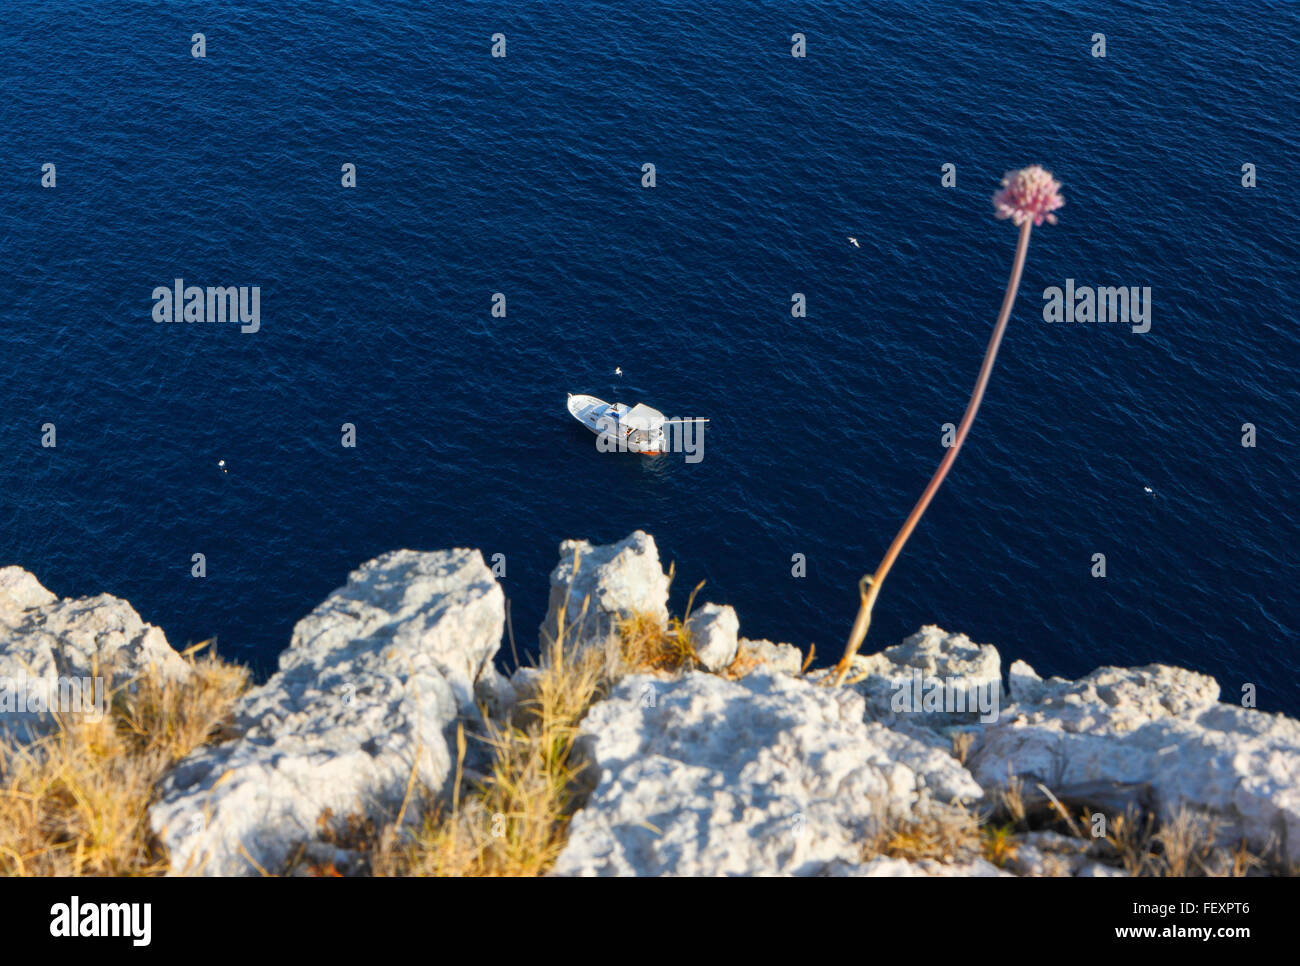 Bateau de pêche La pêche en eau profonde de la mer croate près de l'île de Lastovo. Banque D'Images